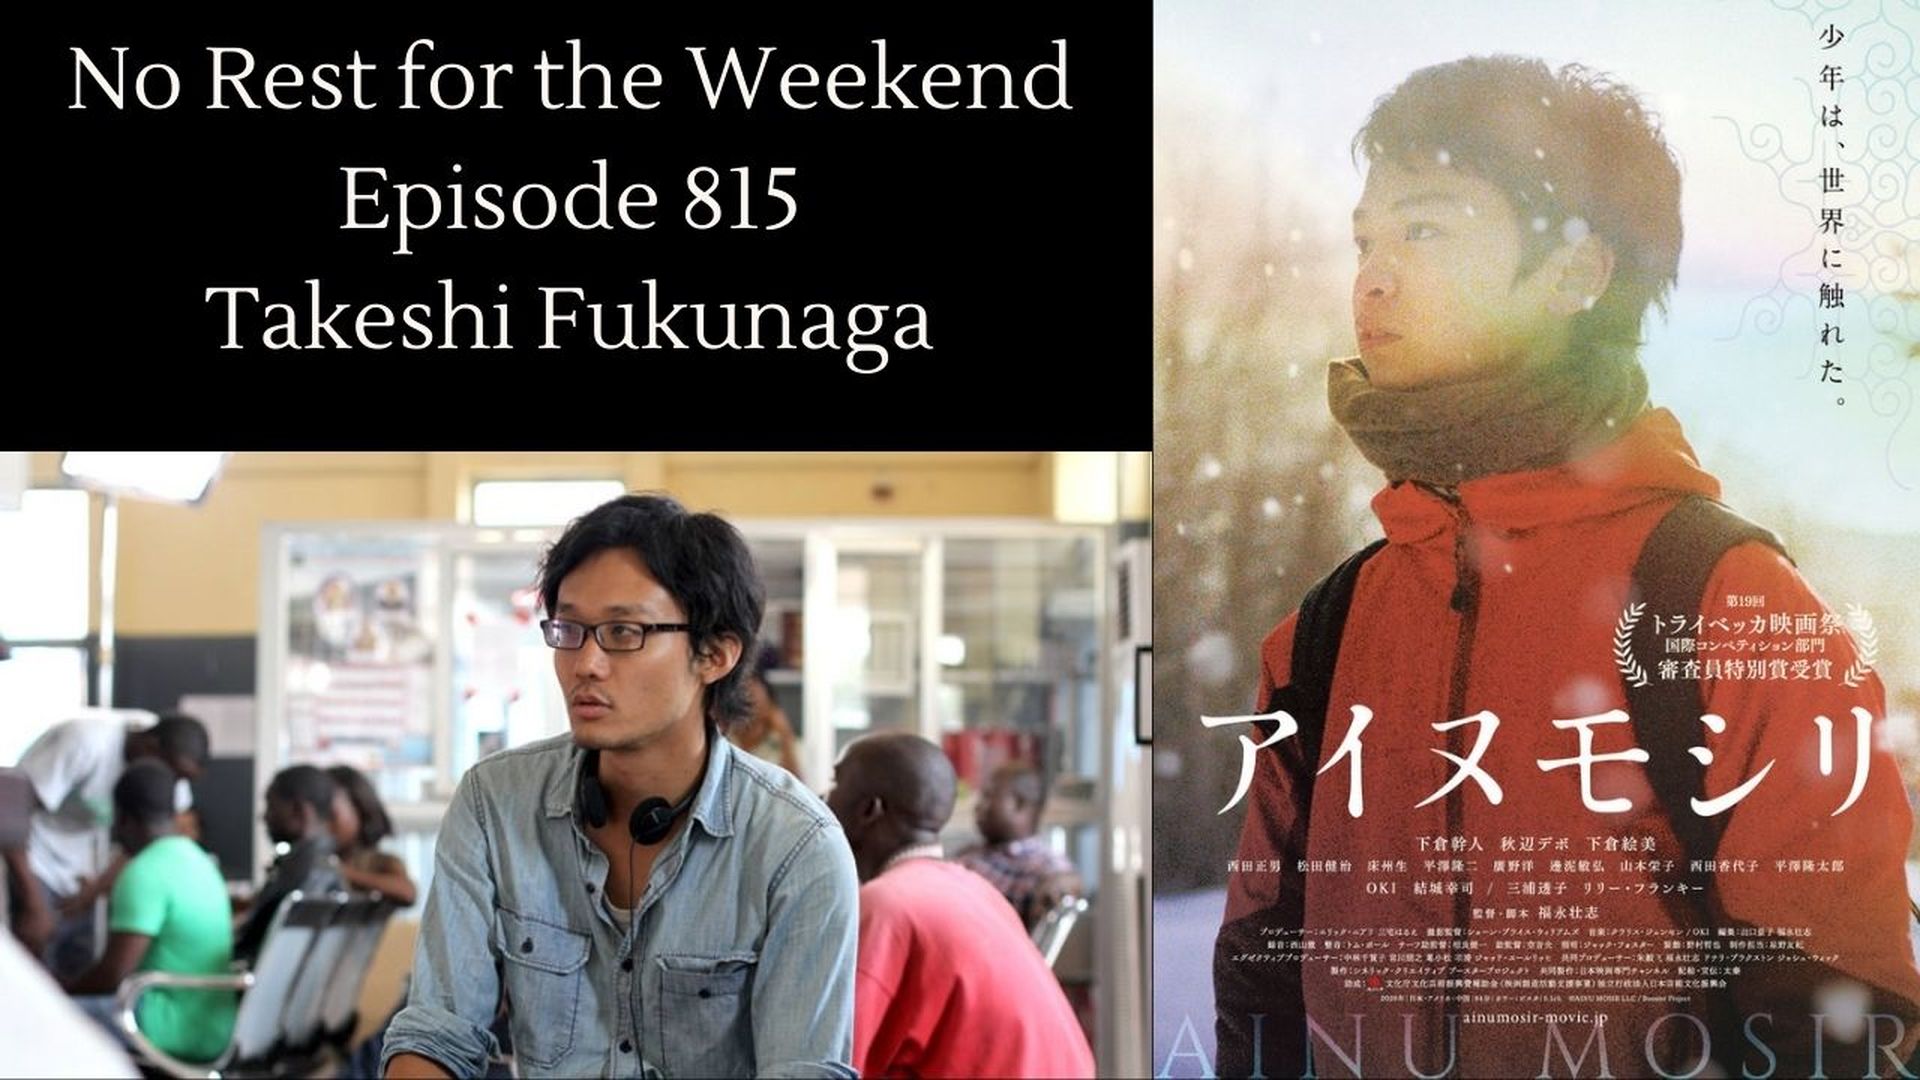 Episode 815: Takeshi Fukunaga